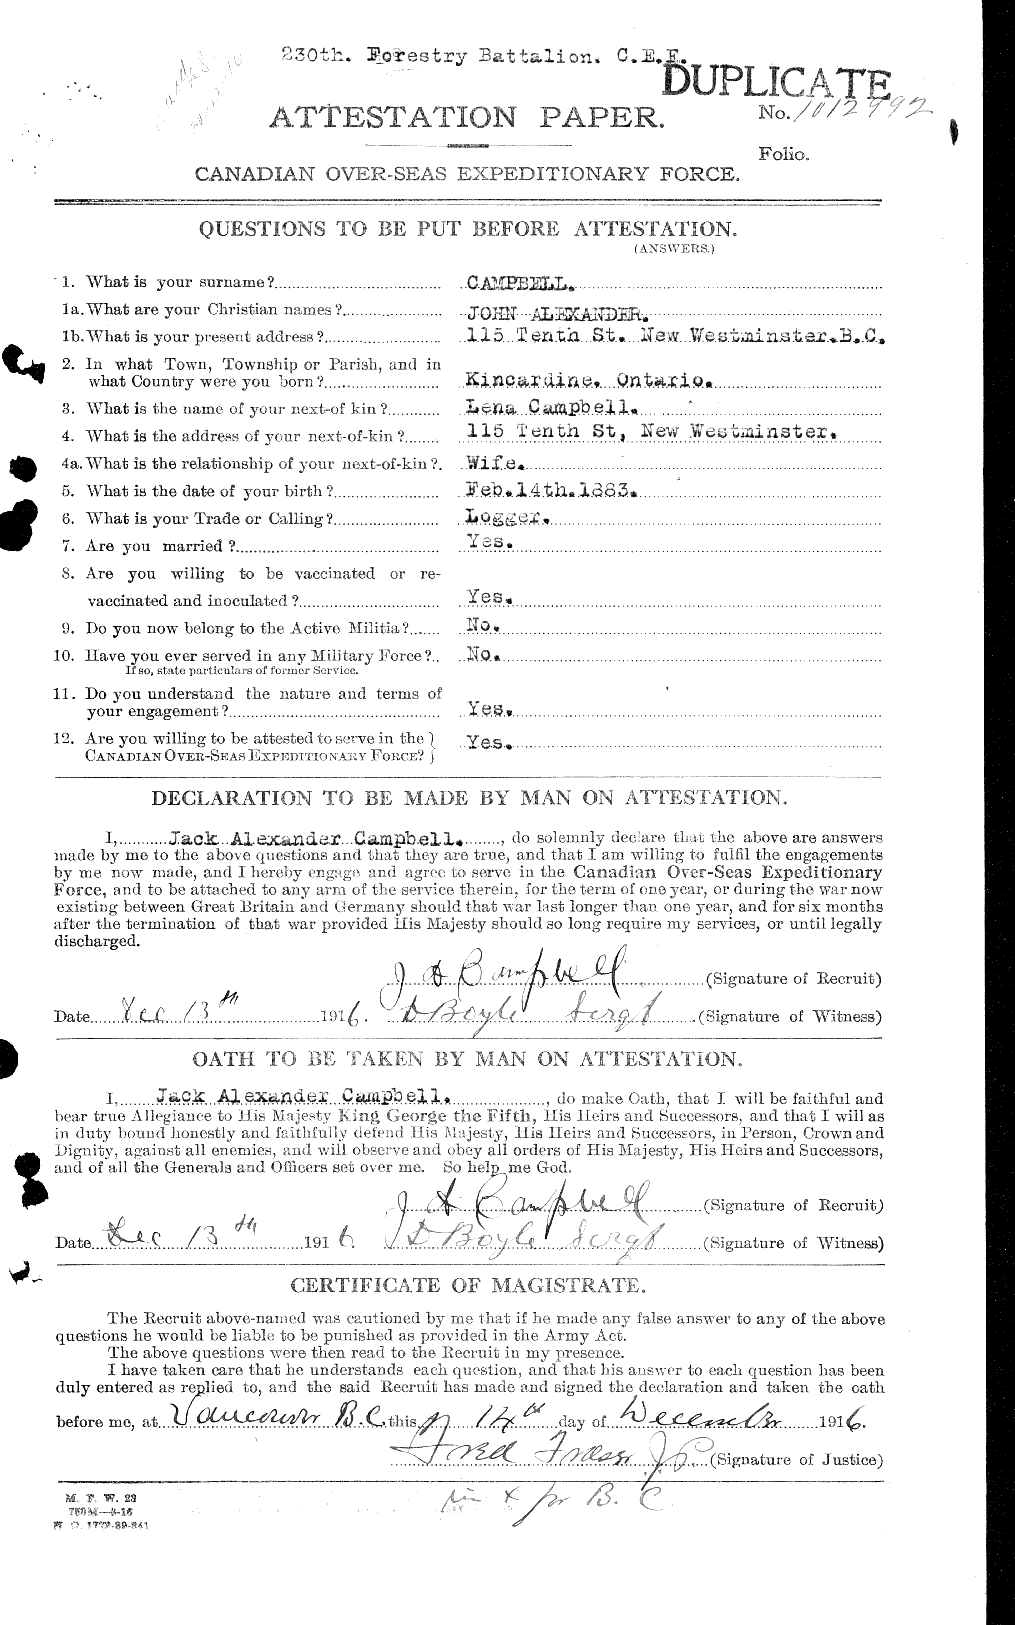 Dossiers du Personnel de la Première Guerre mondiale - CEC 006861a